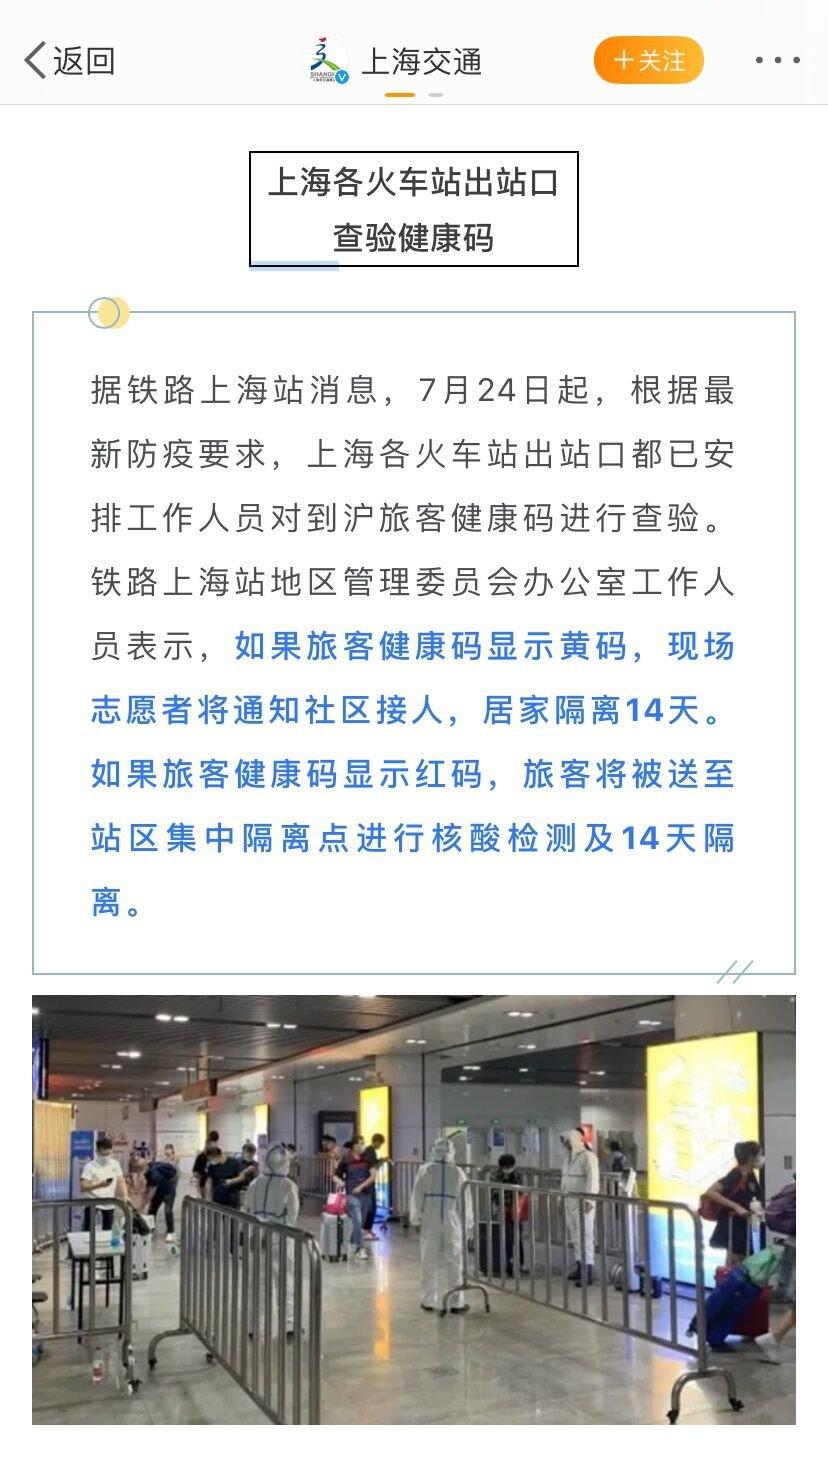 上海火车站防疫政策有哪些改动 上海最新疫情防控全面升级